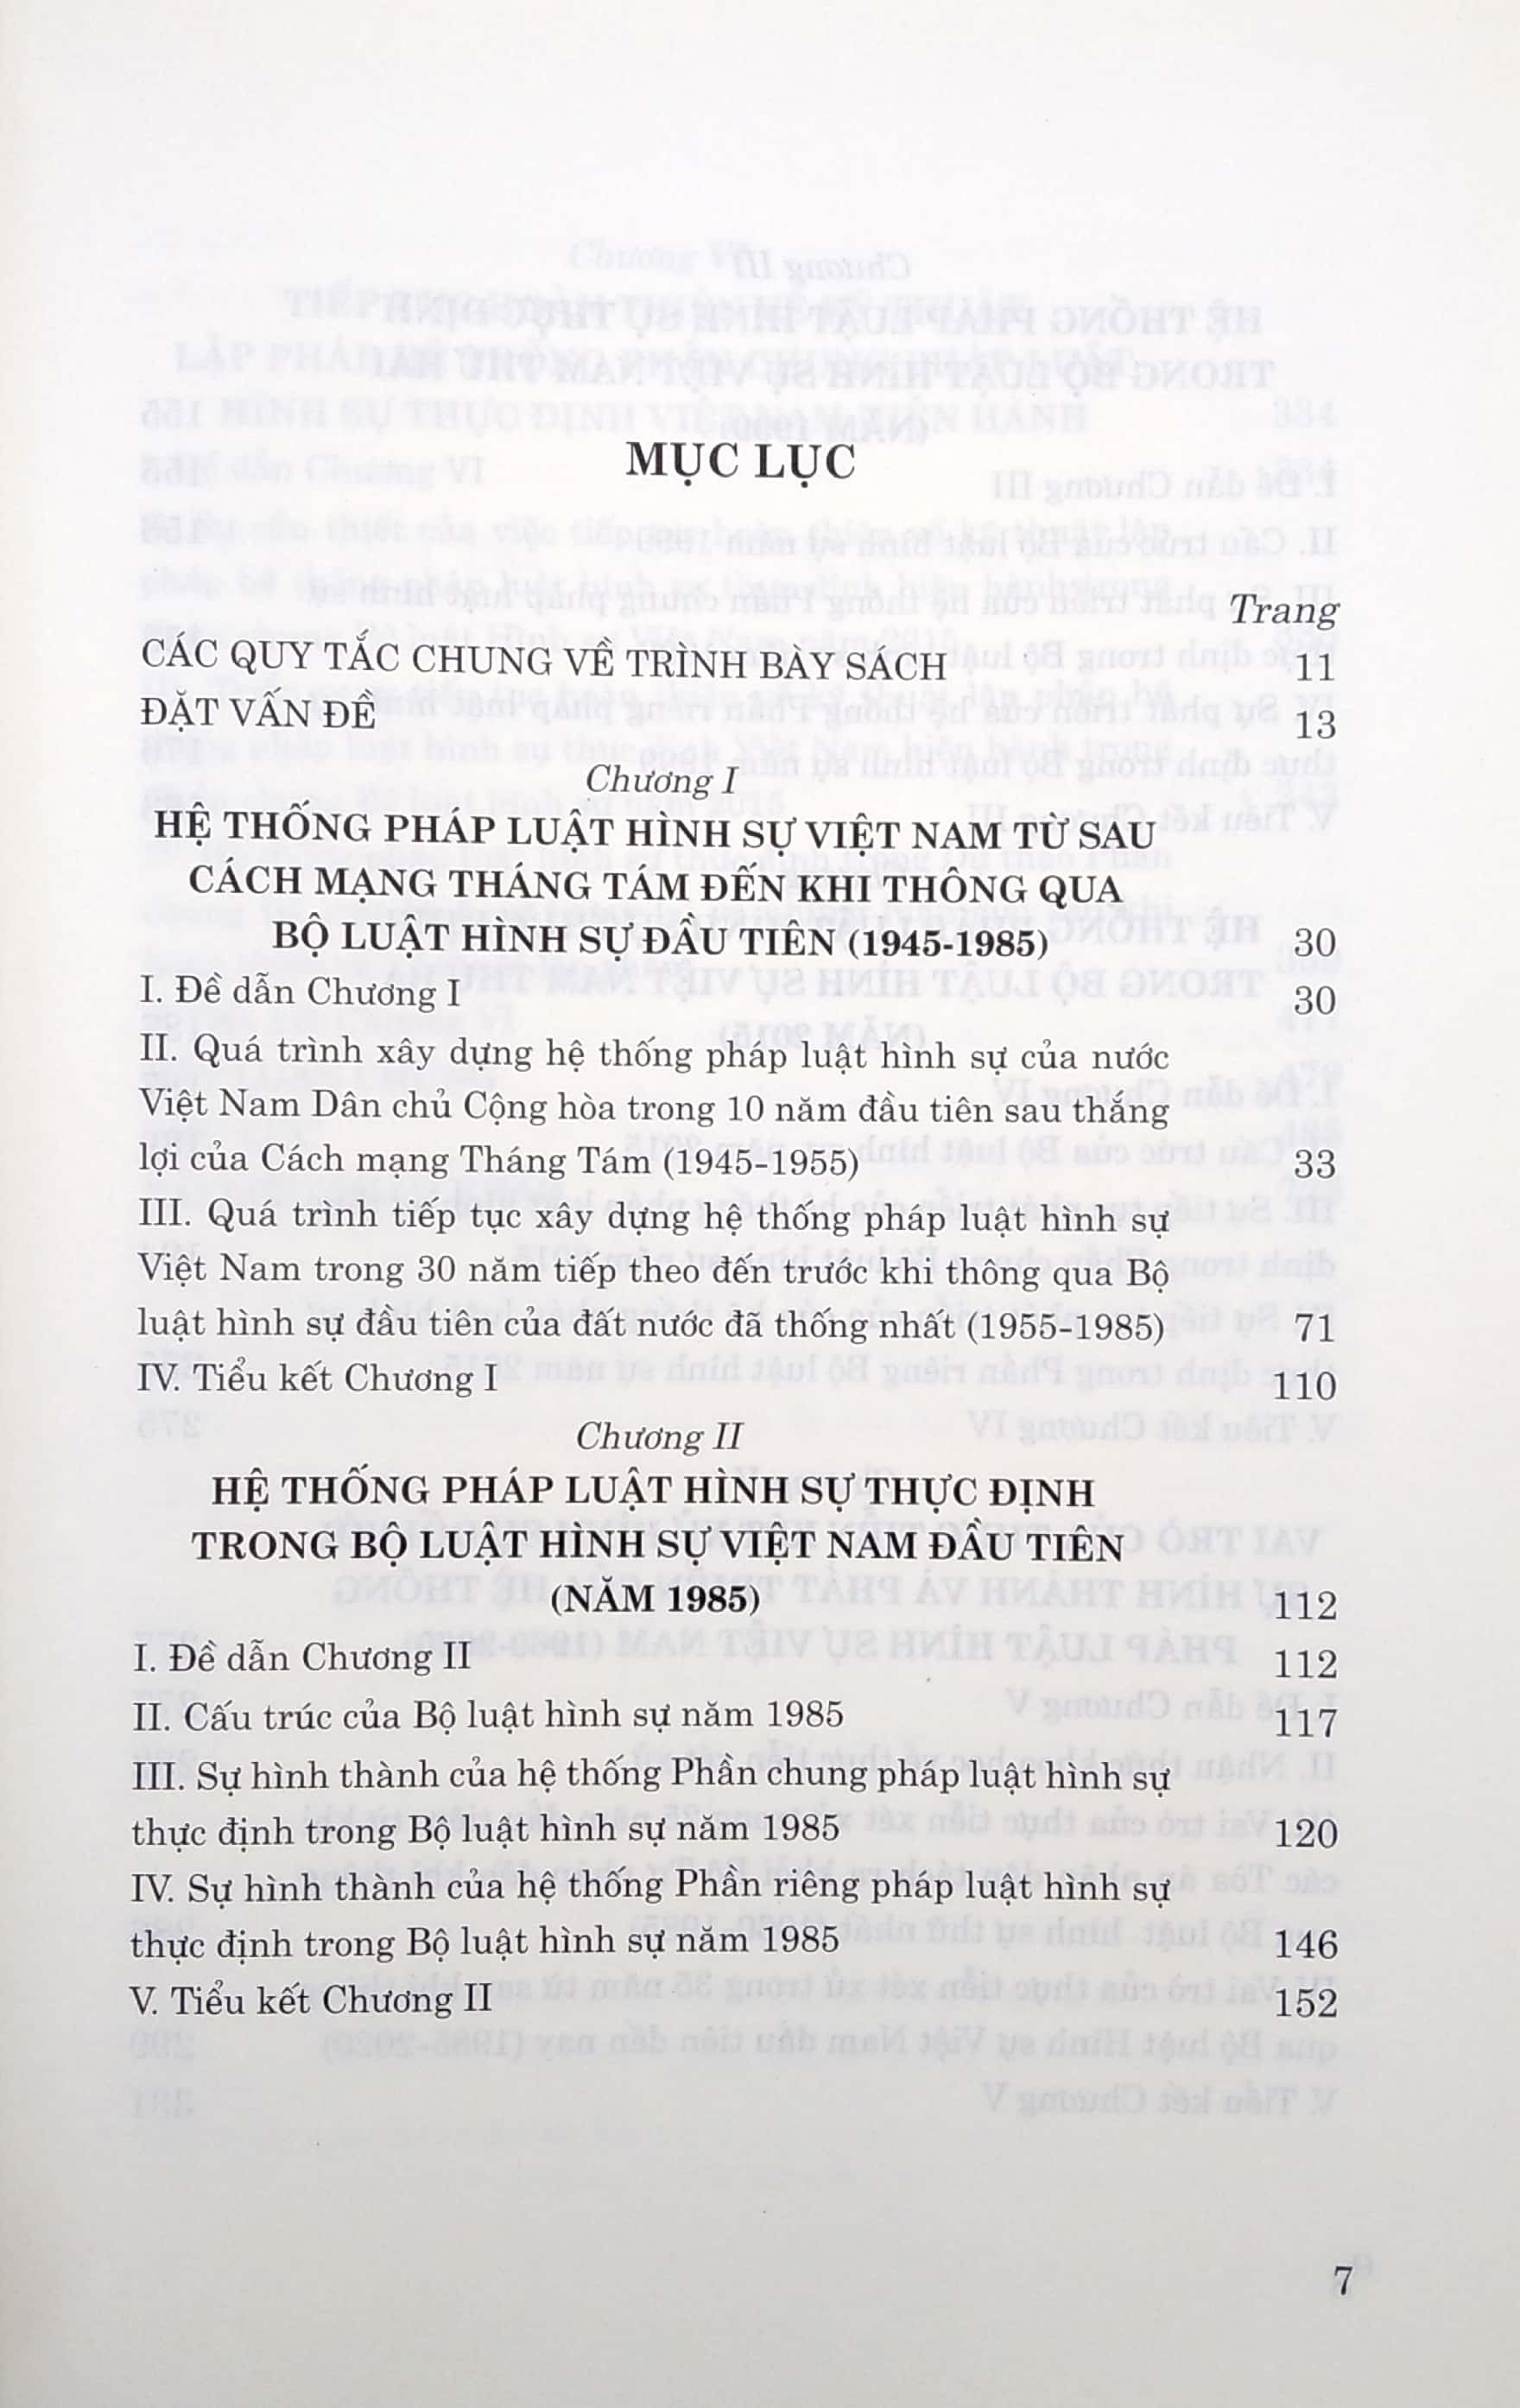 75 Năm Hình Thành, Phát Triển Của Hệ Thống Pháp Luật Hình Sự Việt Nam Và Định Hướng Tiếp Tục Hoàn Thiện 1945-2020 PDF